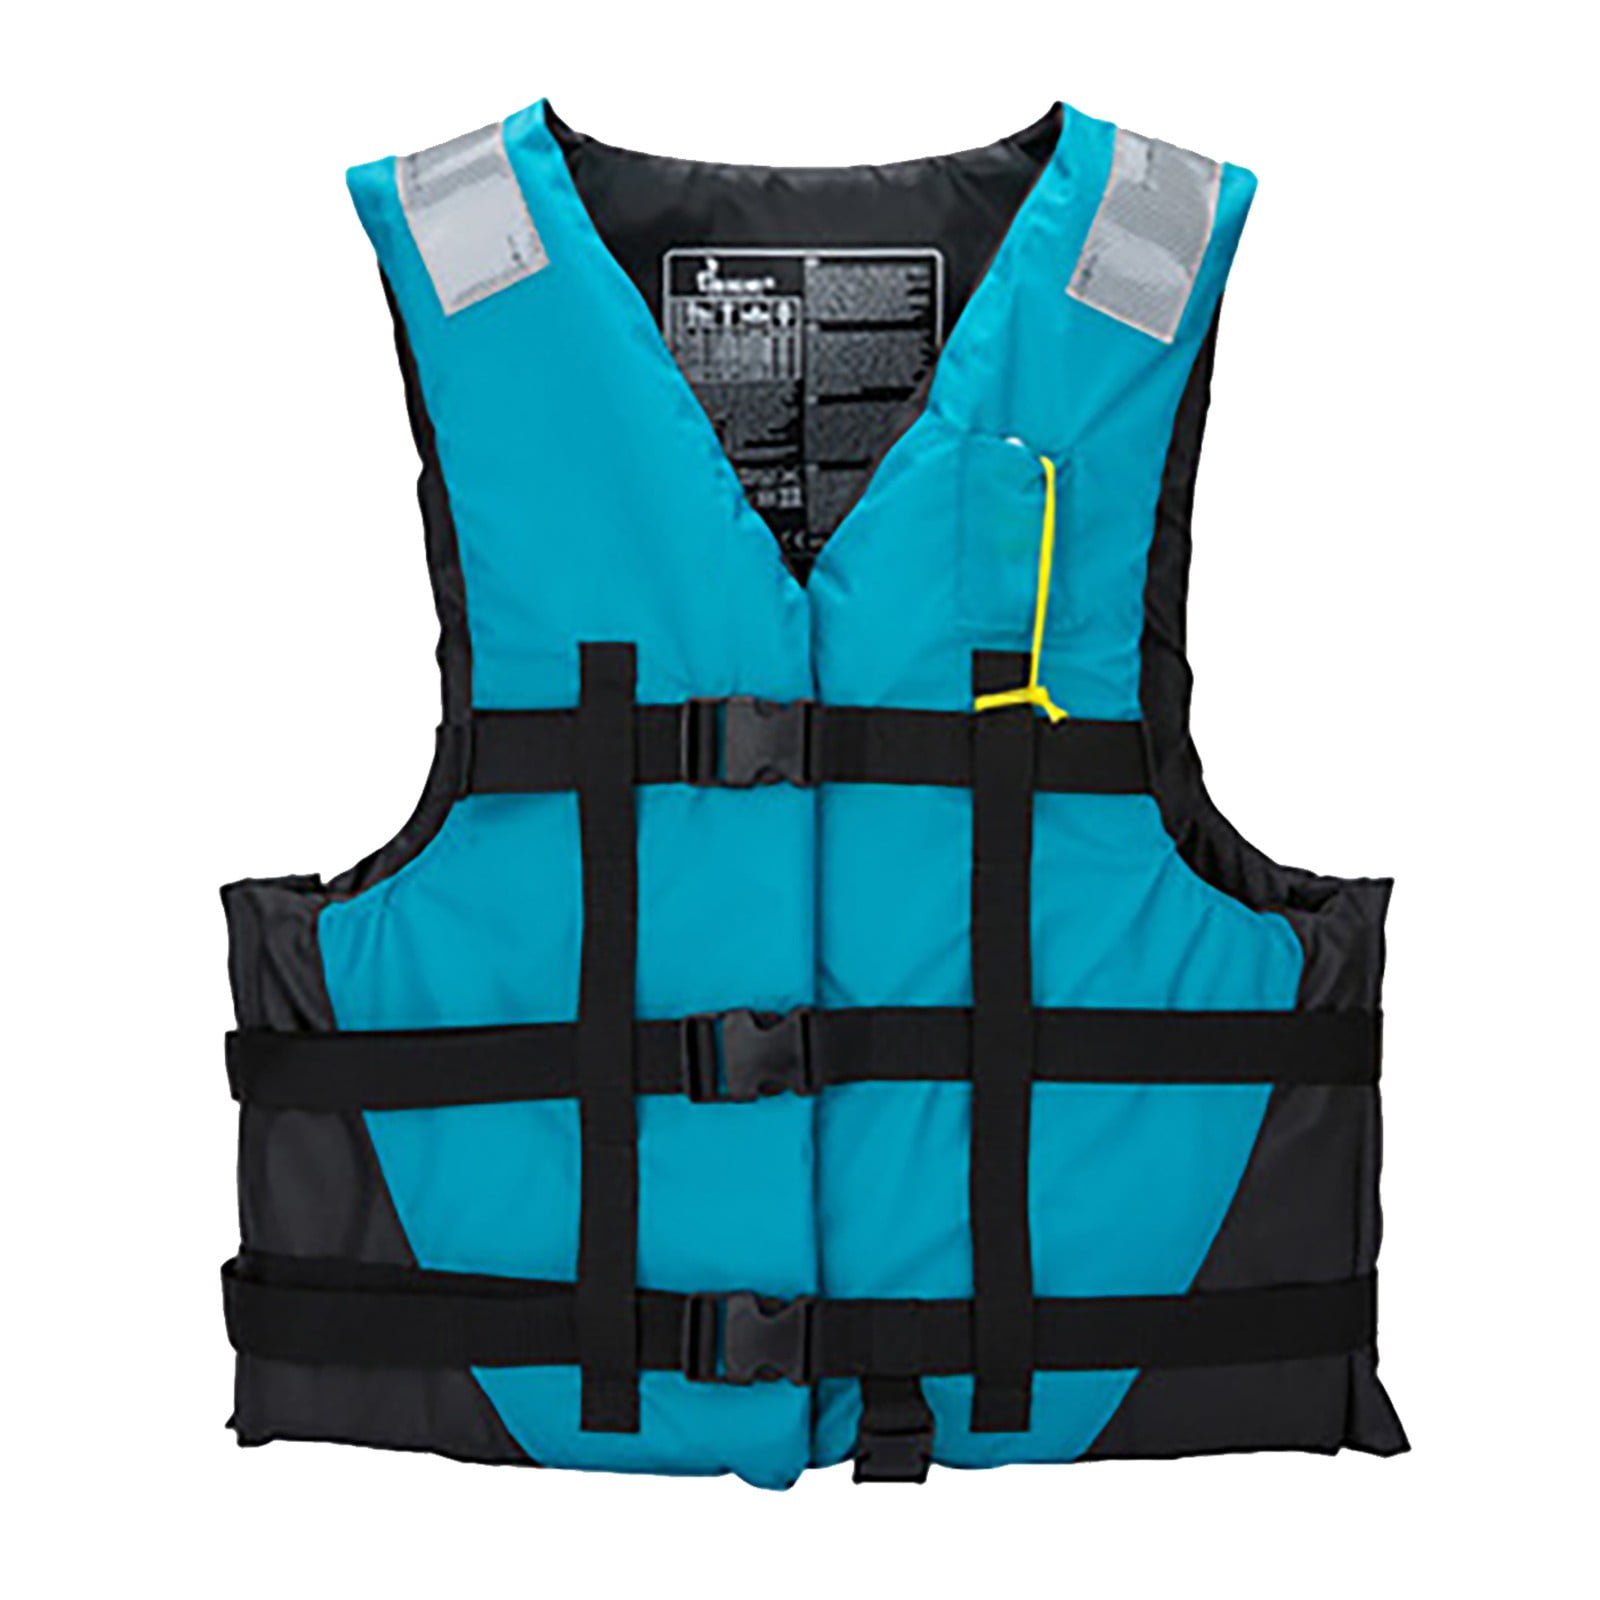 Adult Life Jacket Watersports Vest Kayak Ski Buoyancy Aid Sailing Boating Jacket 